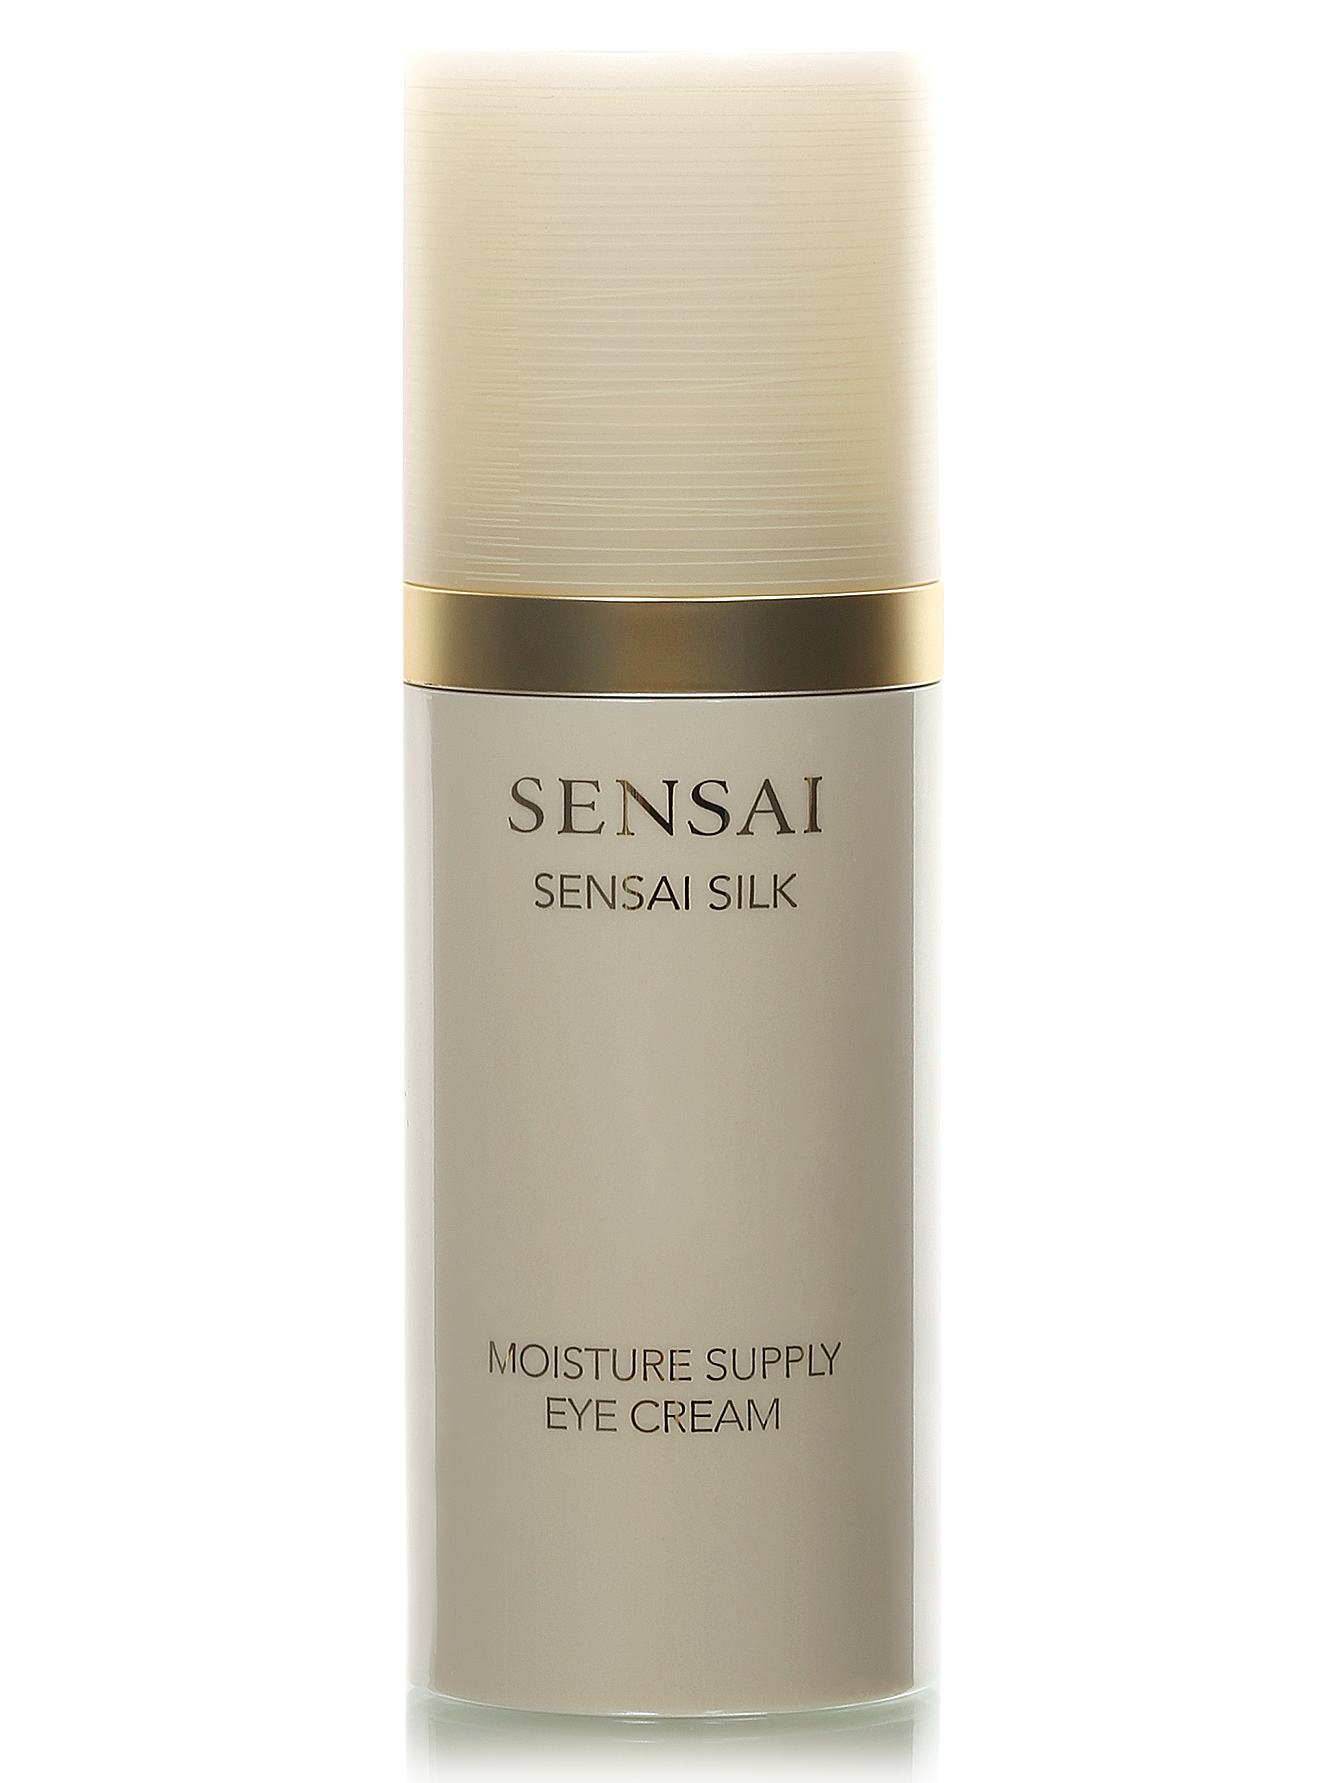 Увлажняющий крем для глаз - Sensai Silk, 15ml - Общий вид